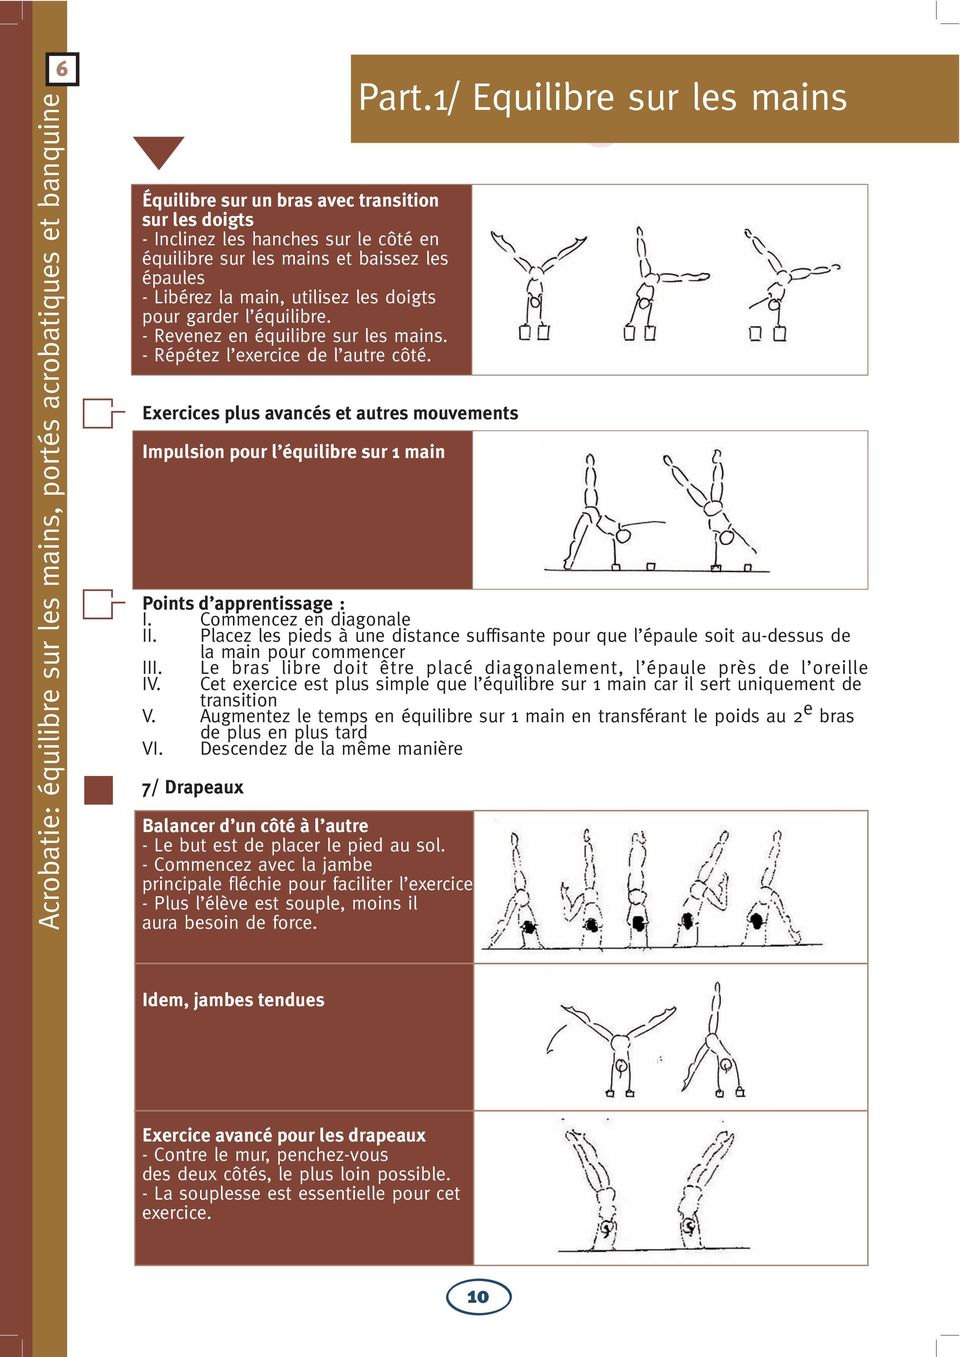 1/ Equilibre sur les mains Points d apprentissage : I. Commencez en diagonale II. Placez les pieds à une distance suffisante pour que l épaule soit au-dessus de la main pour commencer III.